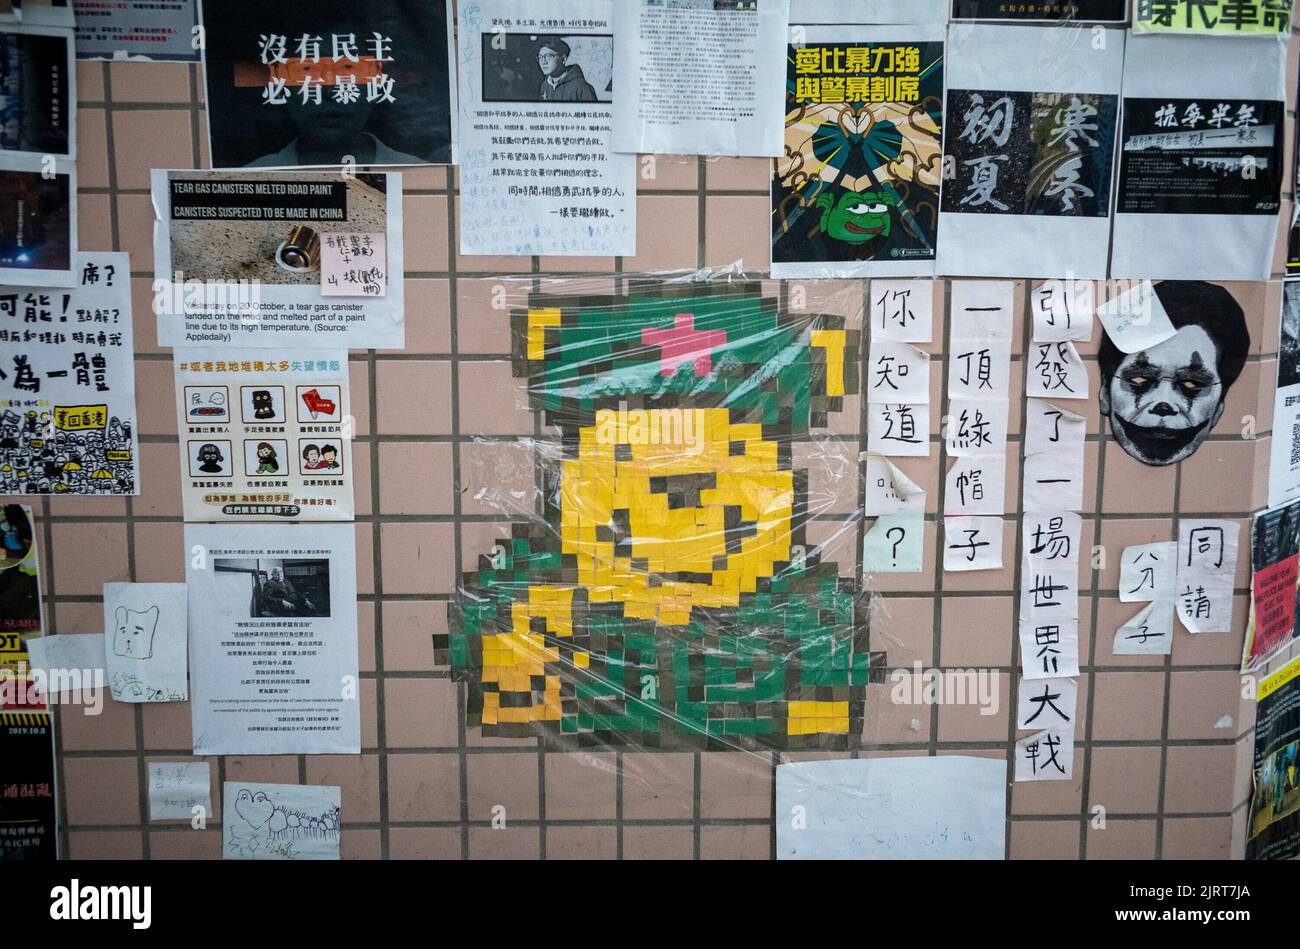 John Lennons Wand mit Plakaten und Schildern, die den Freiheitskampf Hongkongs fordern, drapiert, Und in jüngerer Zeit die Selbstverteidigung der Ukraine gegen Russland unterstützt, die am 26/08/2022 an der NCCU Univercity in Taipei, Taiwan, eingerichtet wurde.Pro-Freedom-Aktivisten, die gegen die Regierung in Peking sind, haben auf einer ähnlichen Mauer, die 1980 in Prag errichtet wurde, den Anstoß genommen. Ursprünglich war die Mauer als eine Möglichkeit gedacht, John Lennon nach seinem Mord Tribut zu zollen. Im Laufe der Zeit wurde es jedoch für die Prager Jugend zu einem Weg, gegen die repressive kommunistische Regierung zu protestieren.von Wiktor Dabkowski Stockfoto